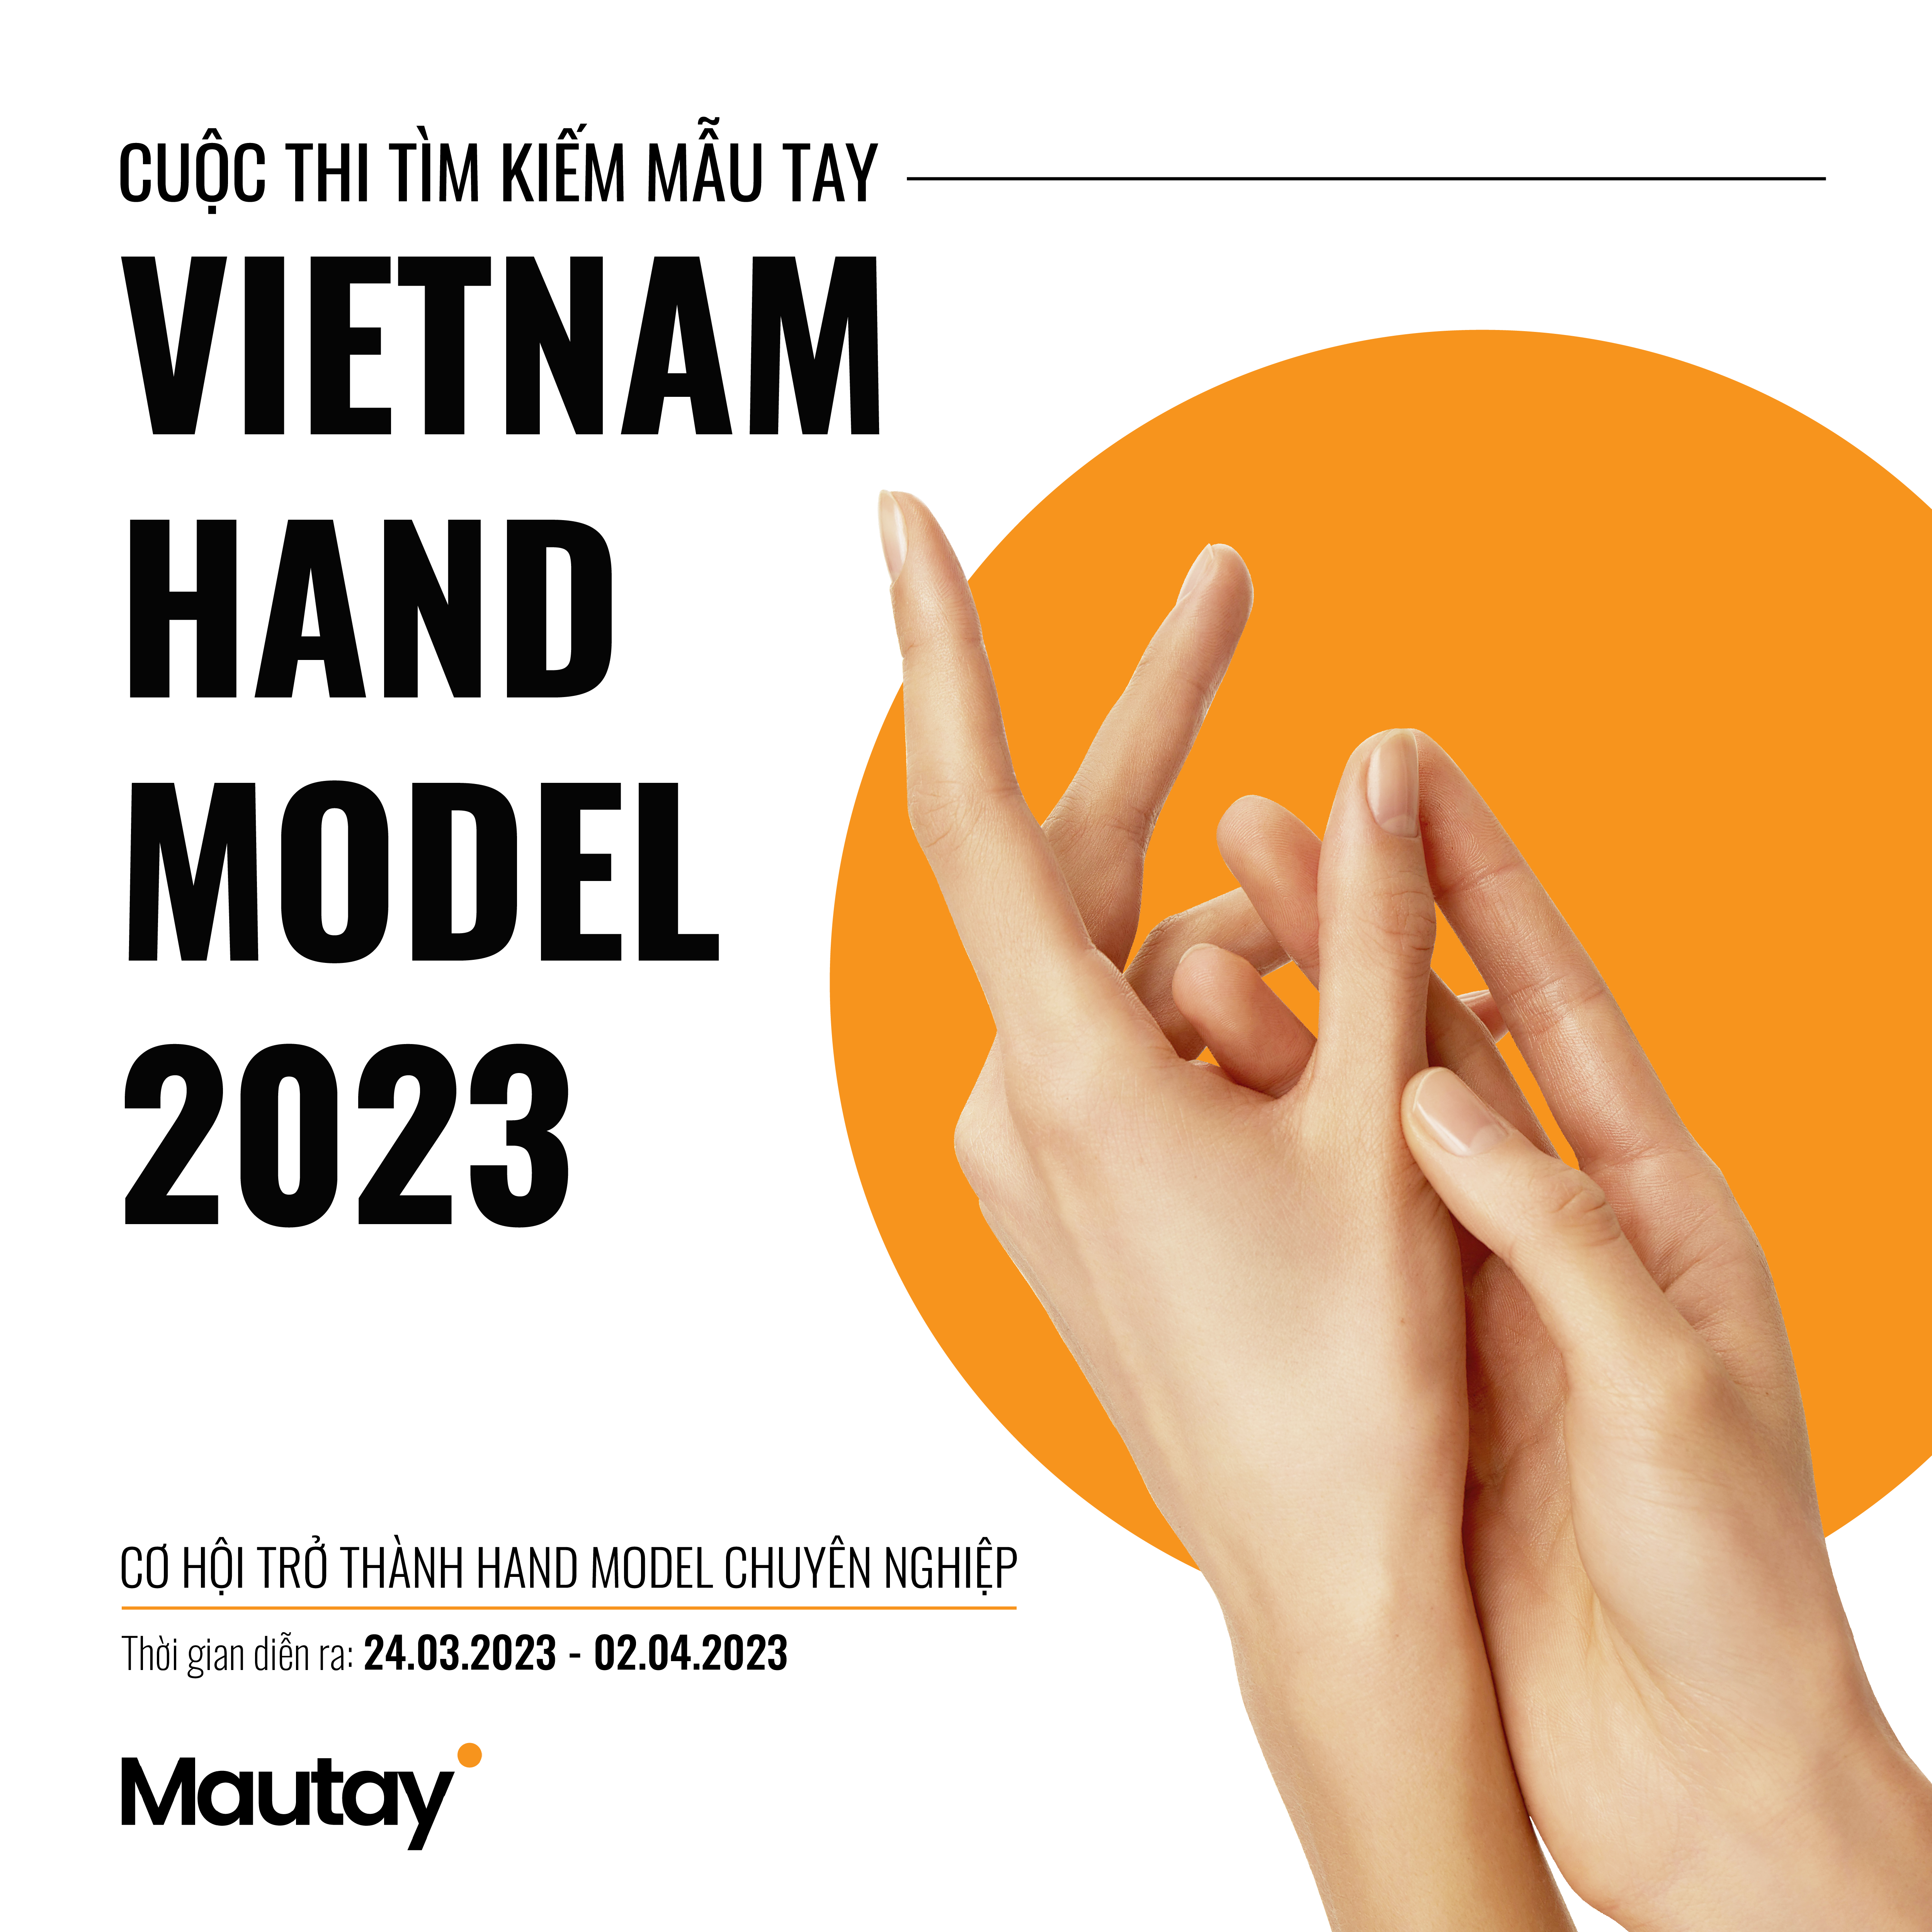 vietnam hand model 2023